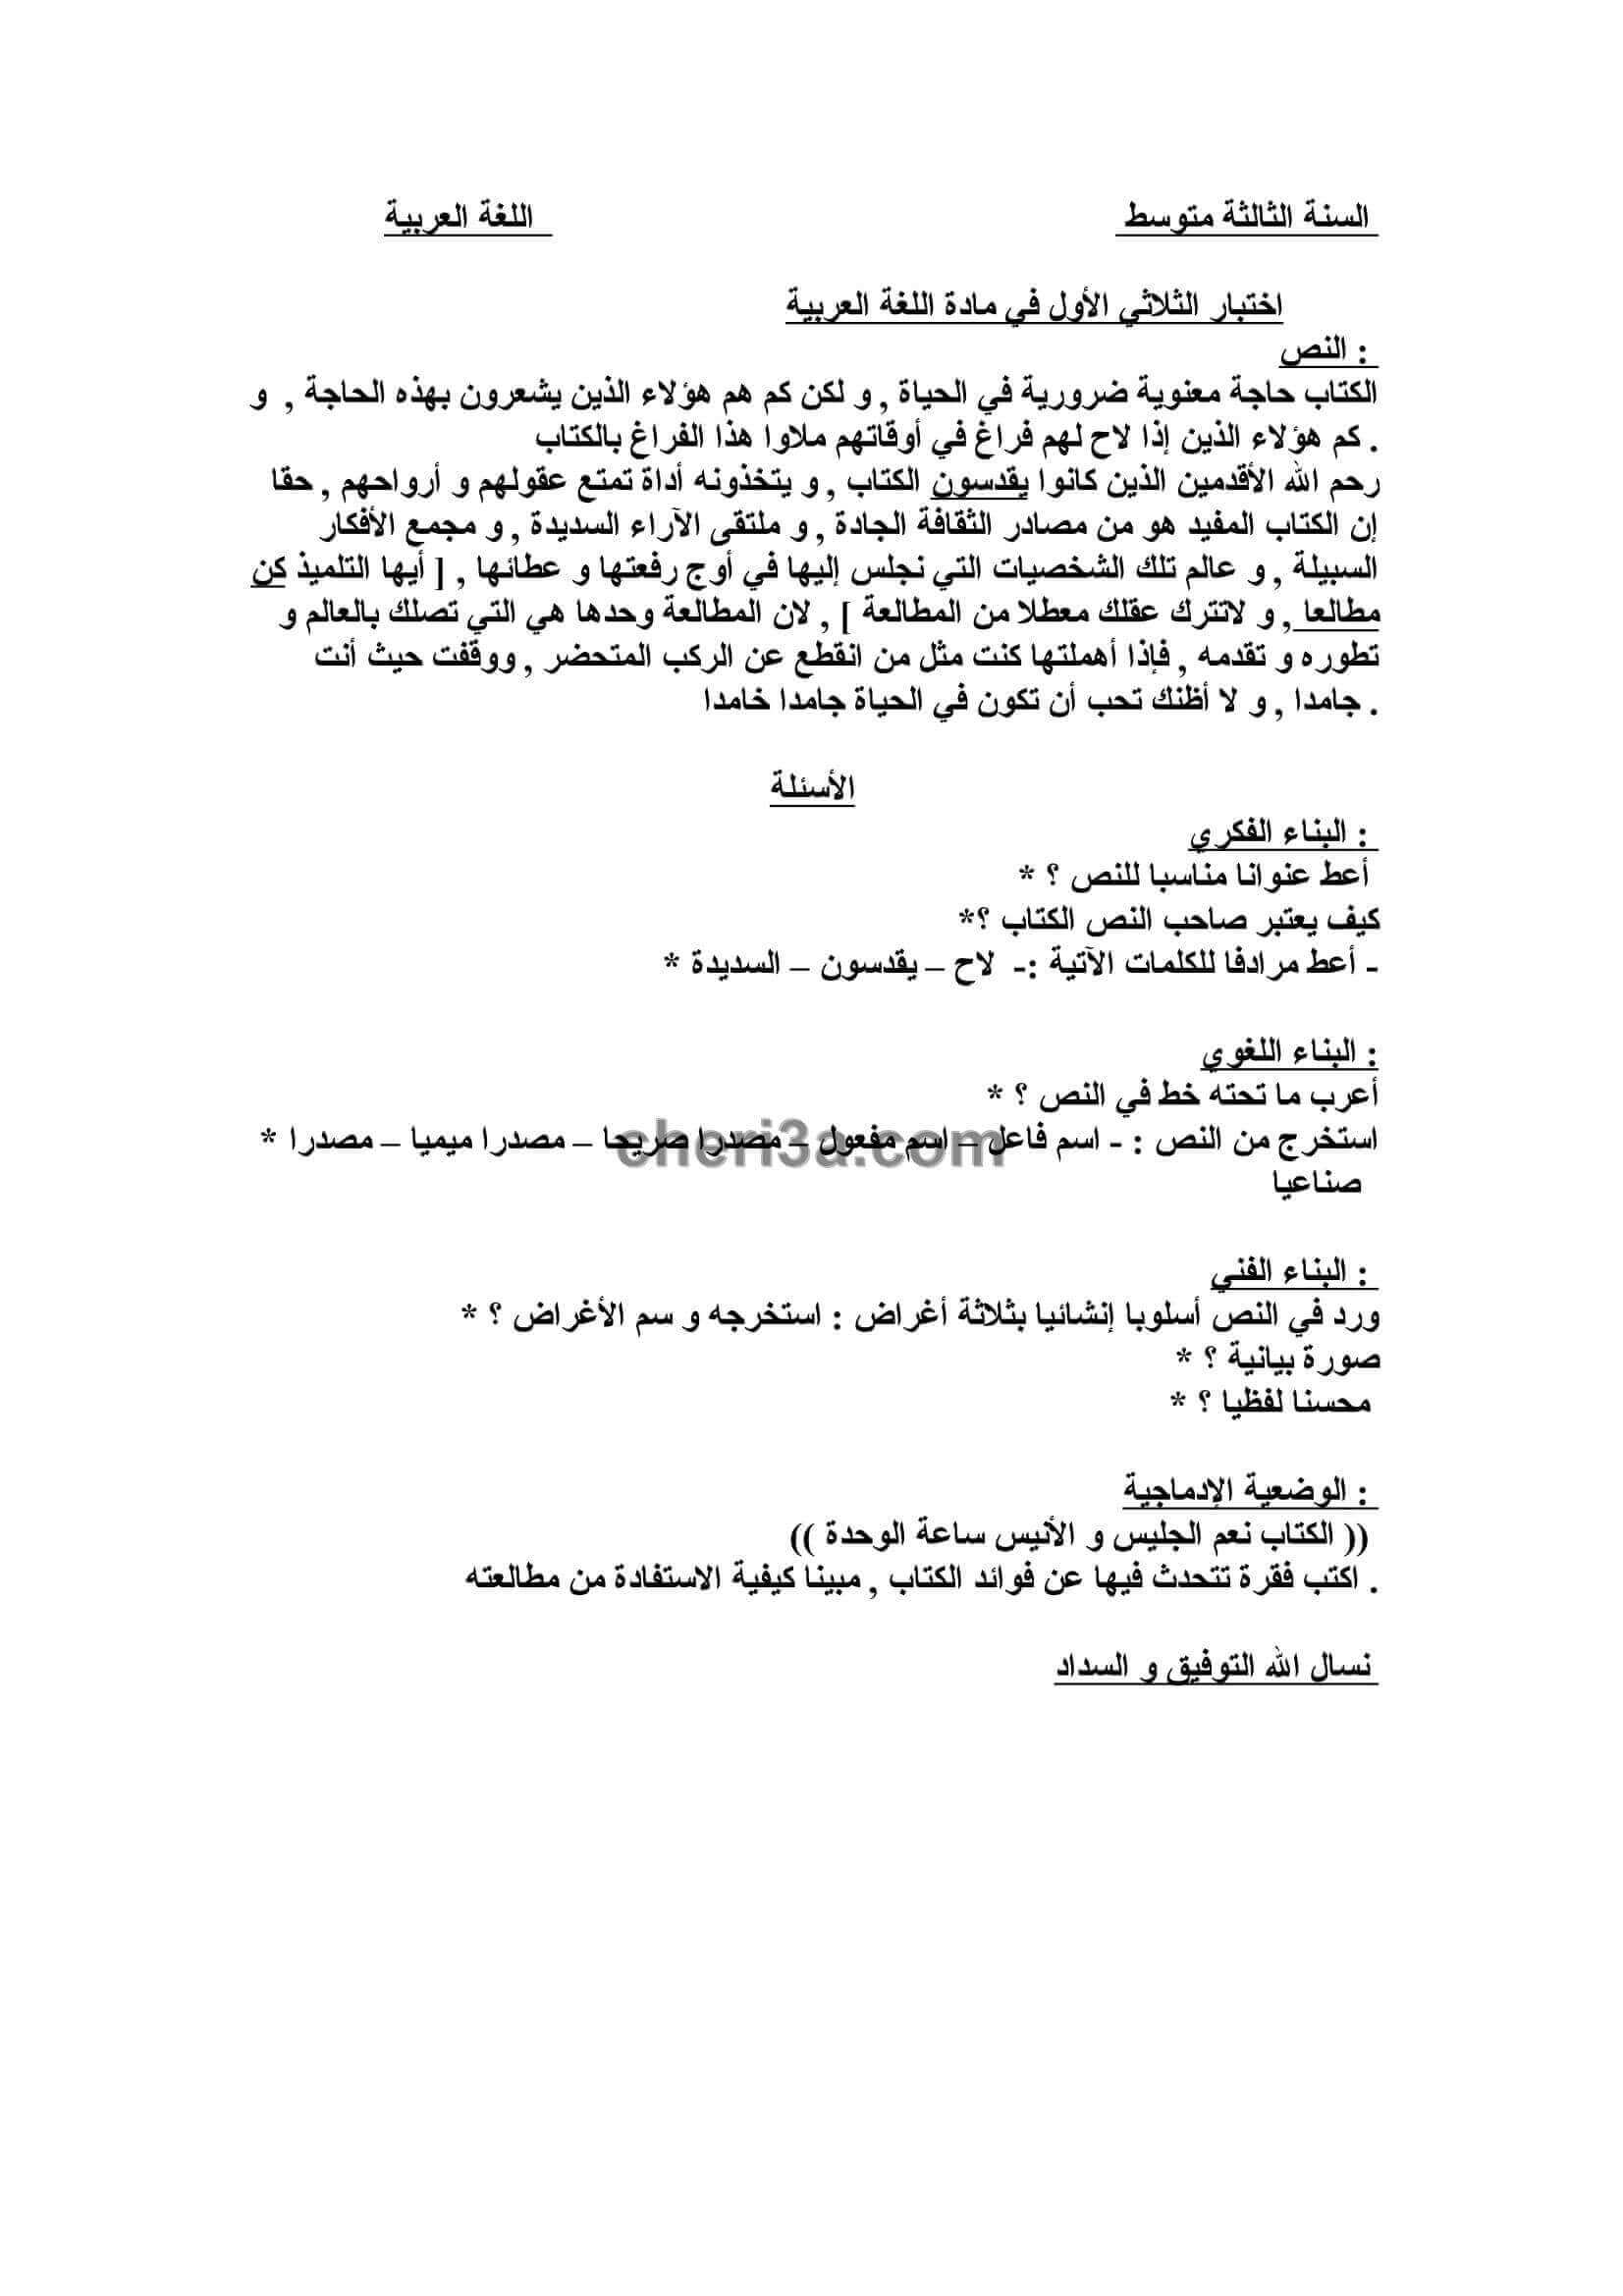 اختبار الفصل الاول للسنة الثالثة متوسط في اللغة العربية النموذج 8